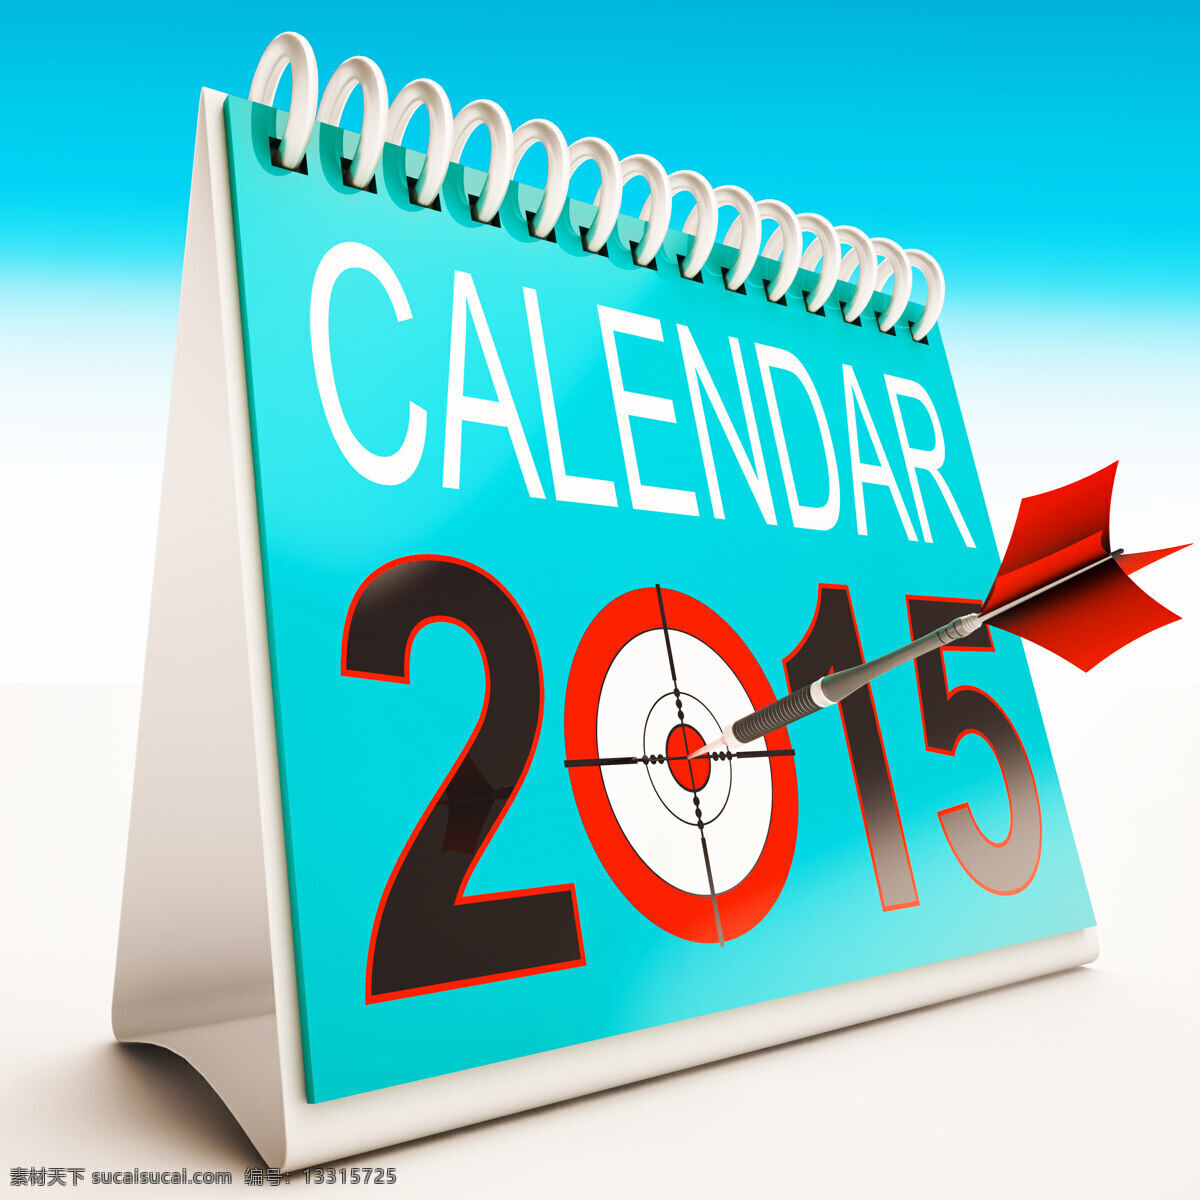 2015 目标 显示 日历 年 组织者